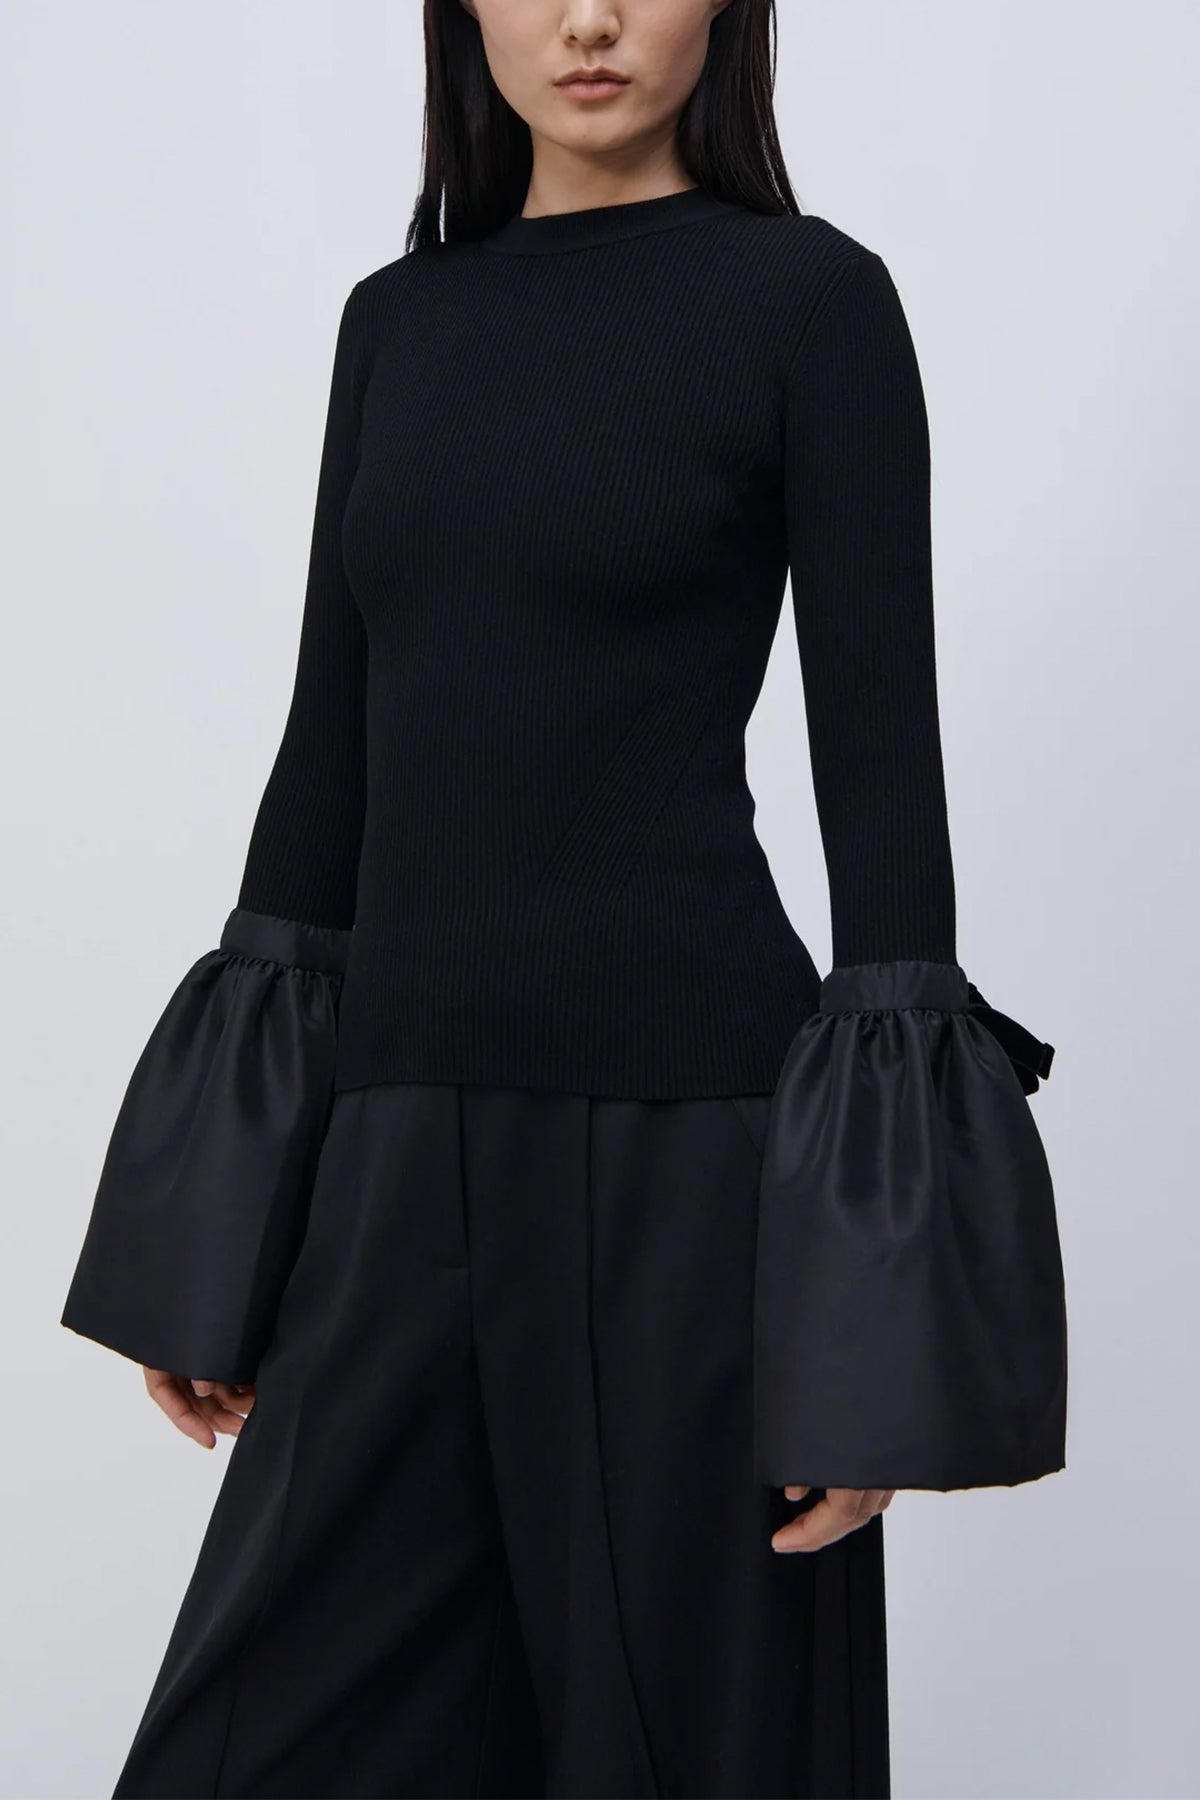 Agata Top in Black - shop-olivia.com